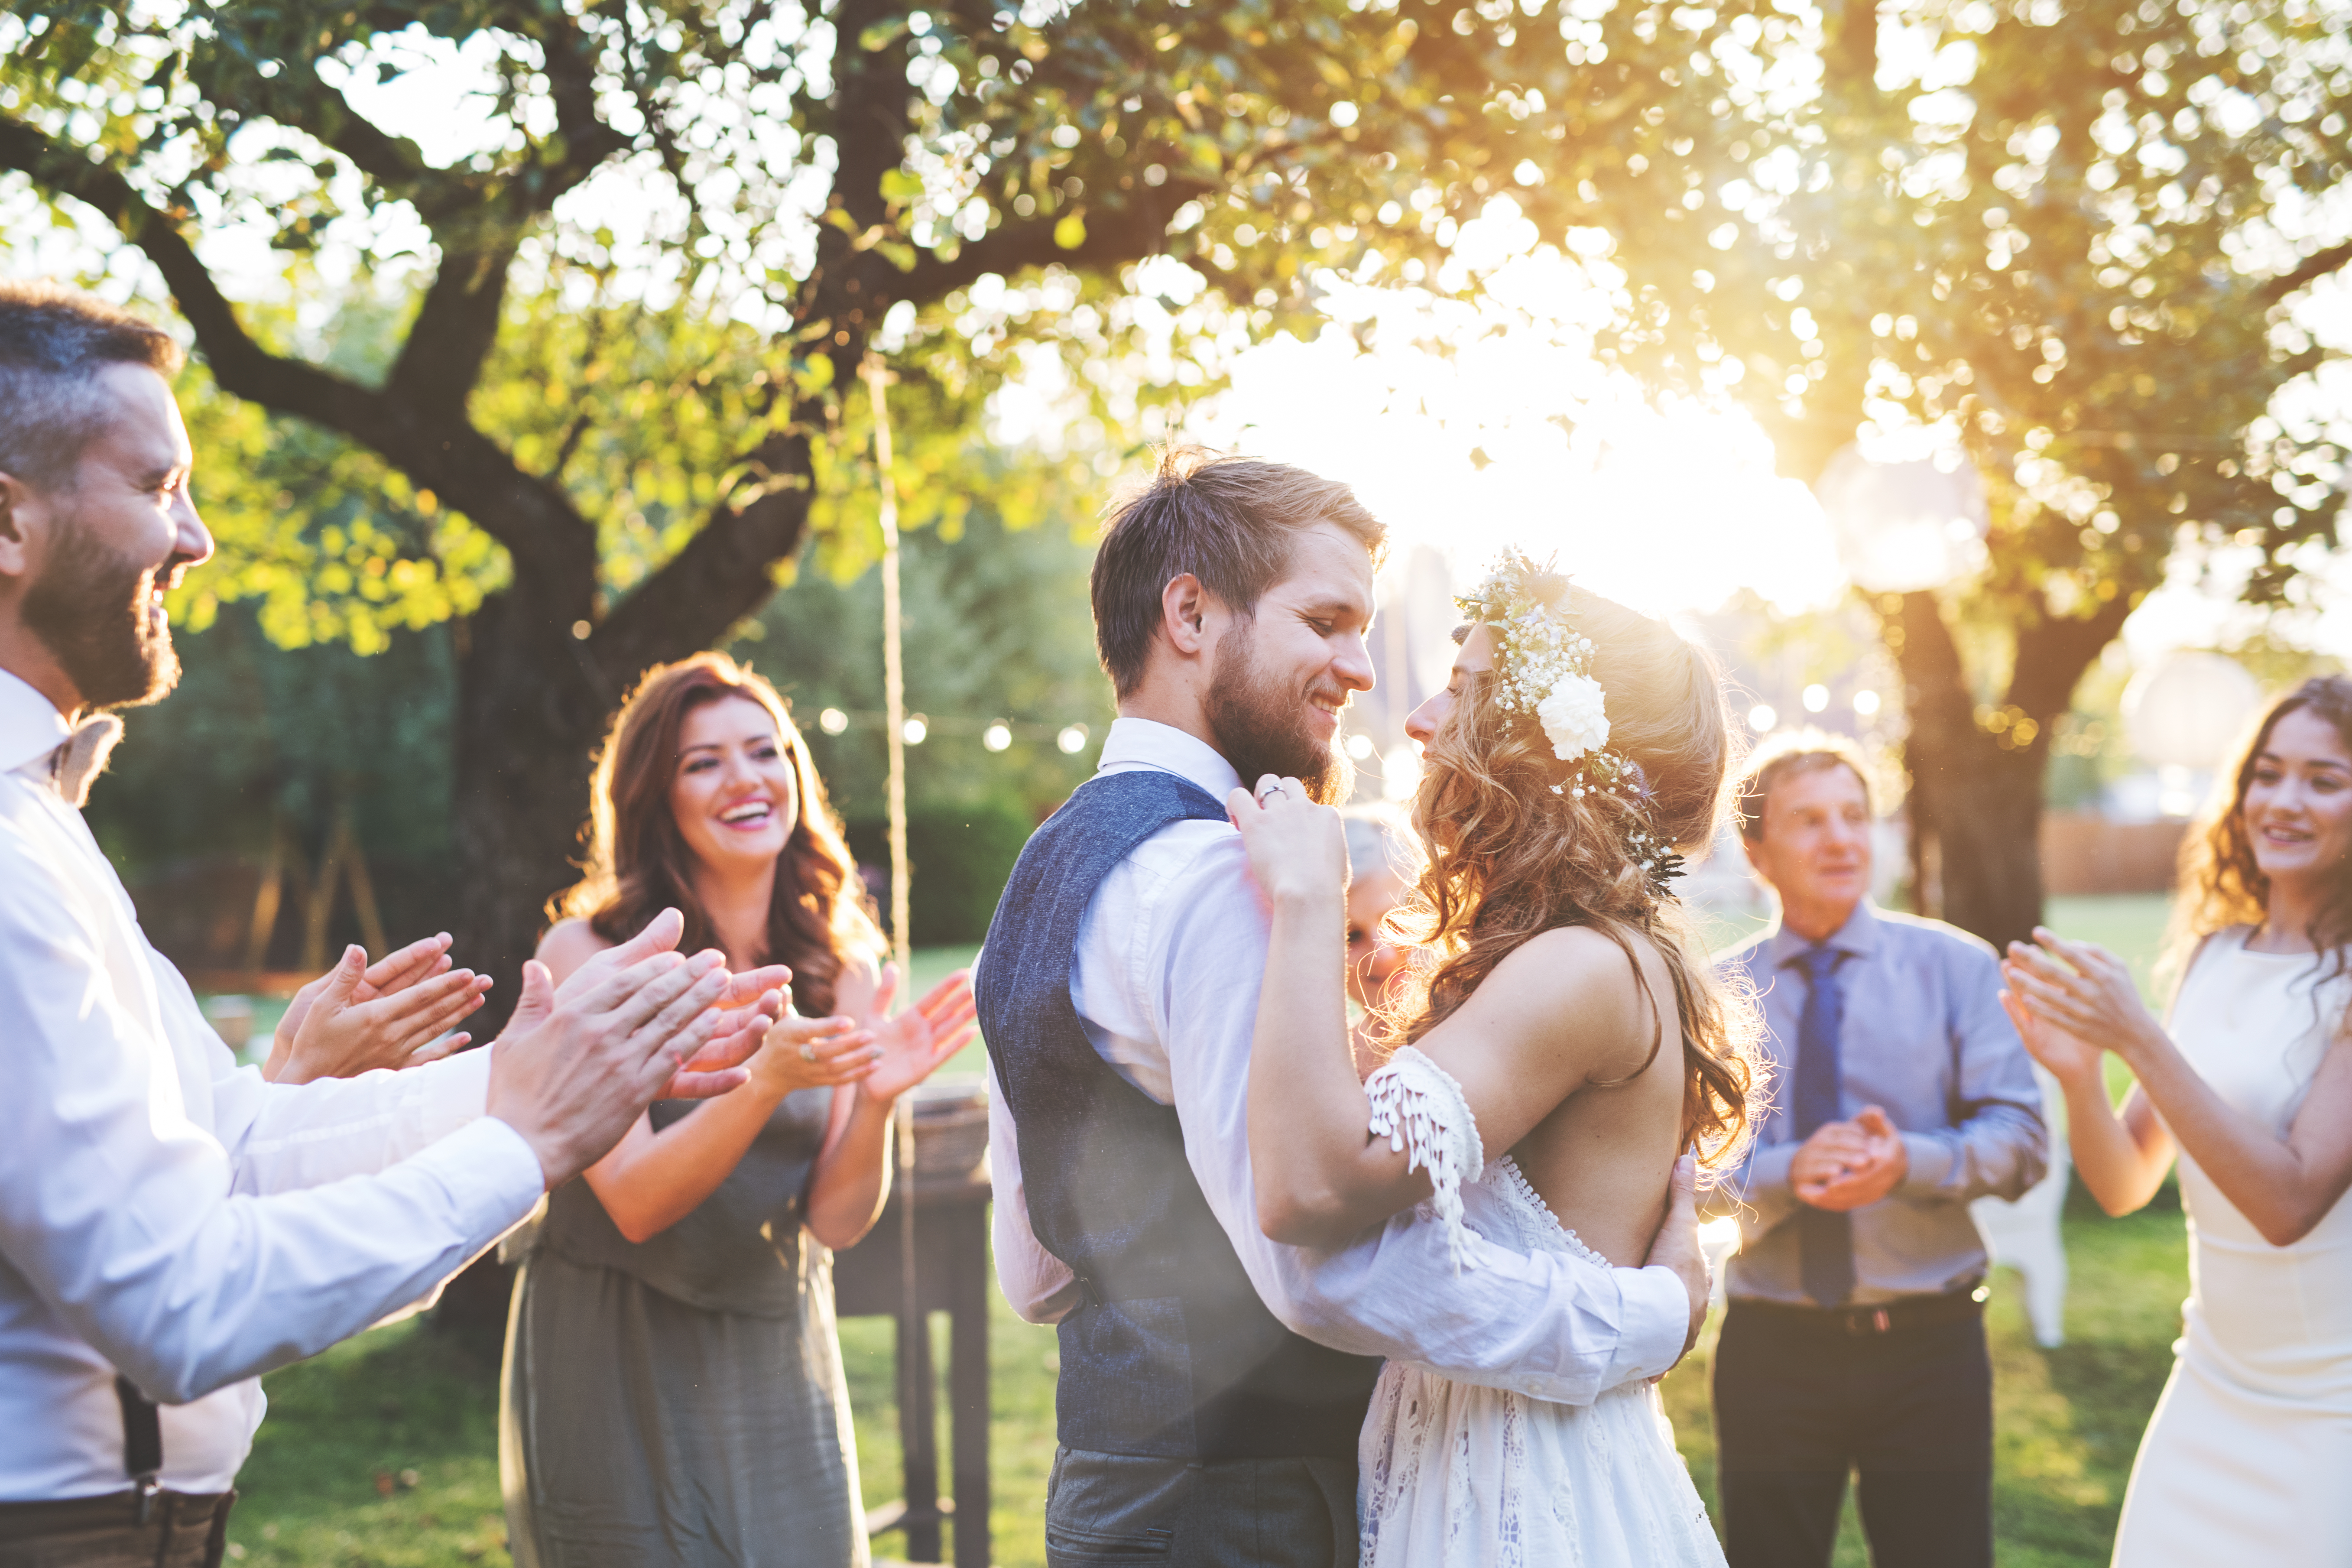 Un jeune couple en train de danser lors de son mariage | Source : Shutterstock